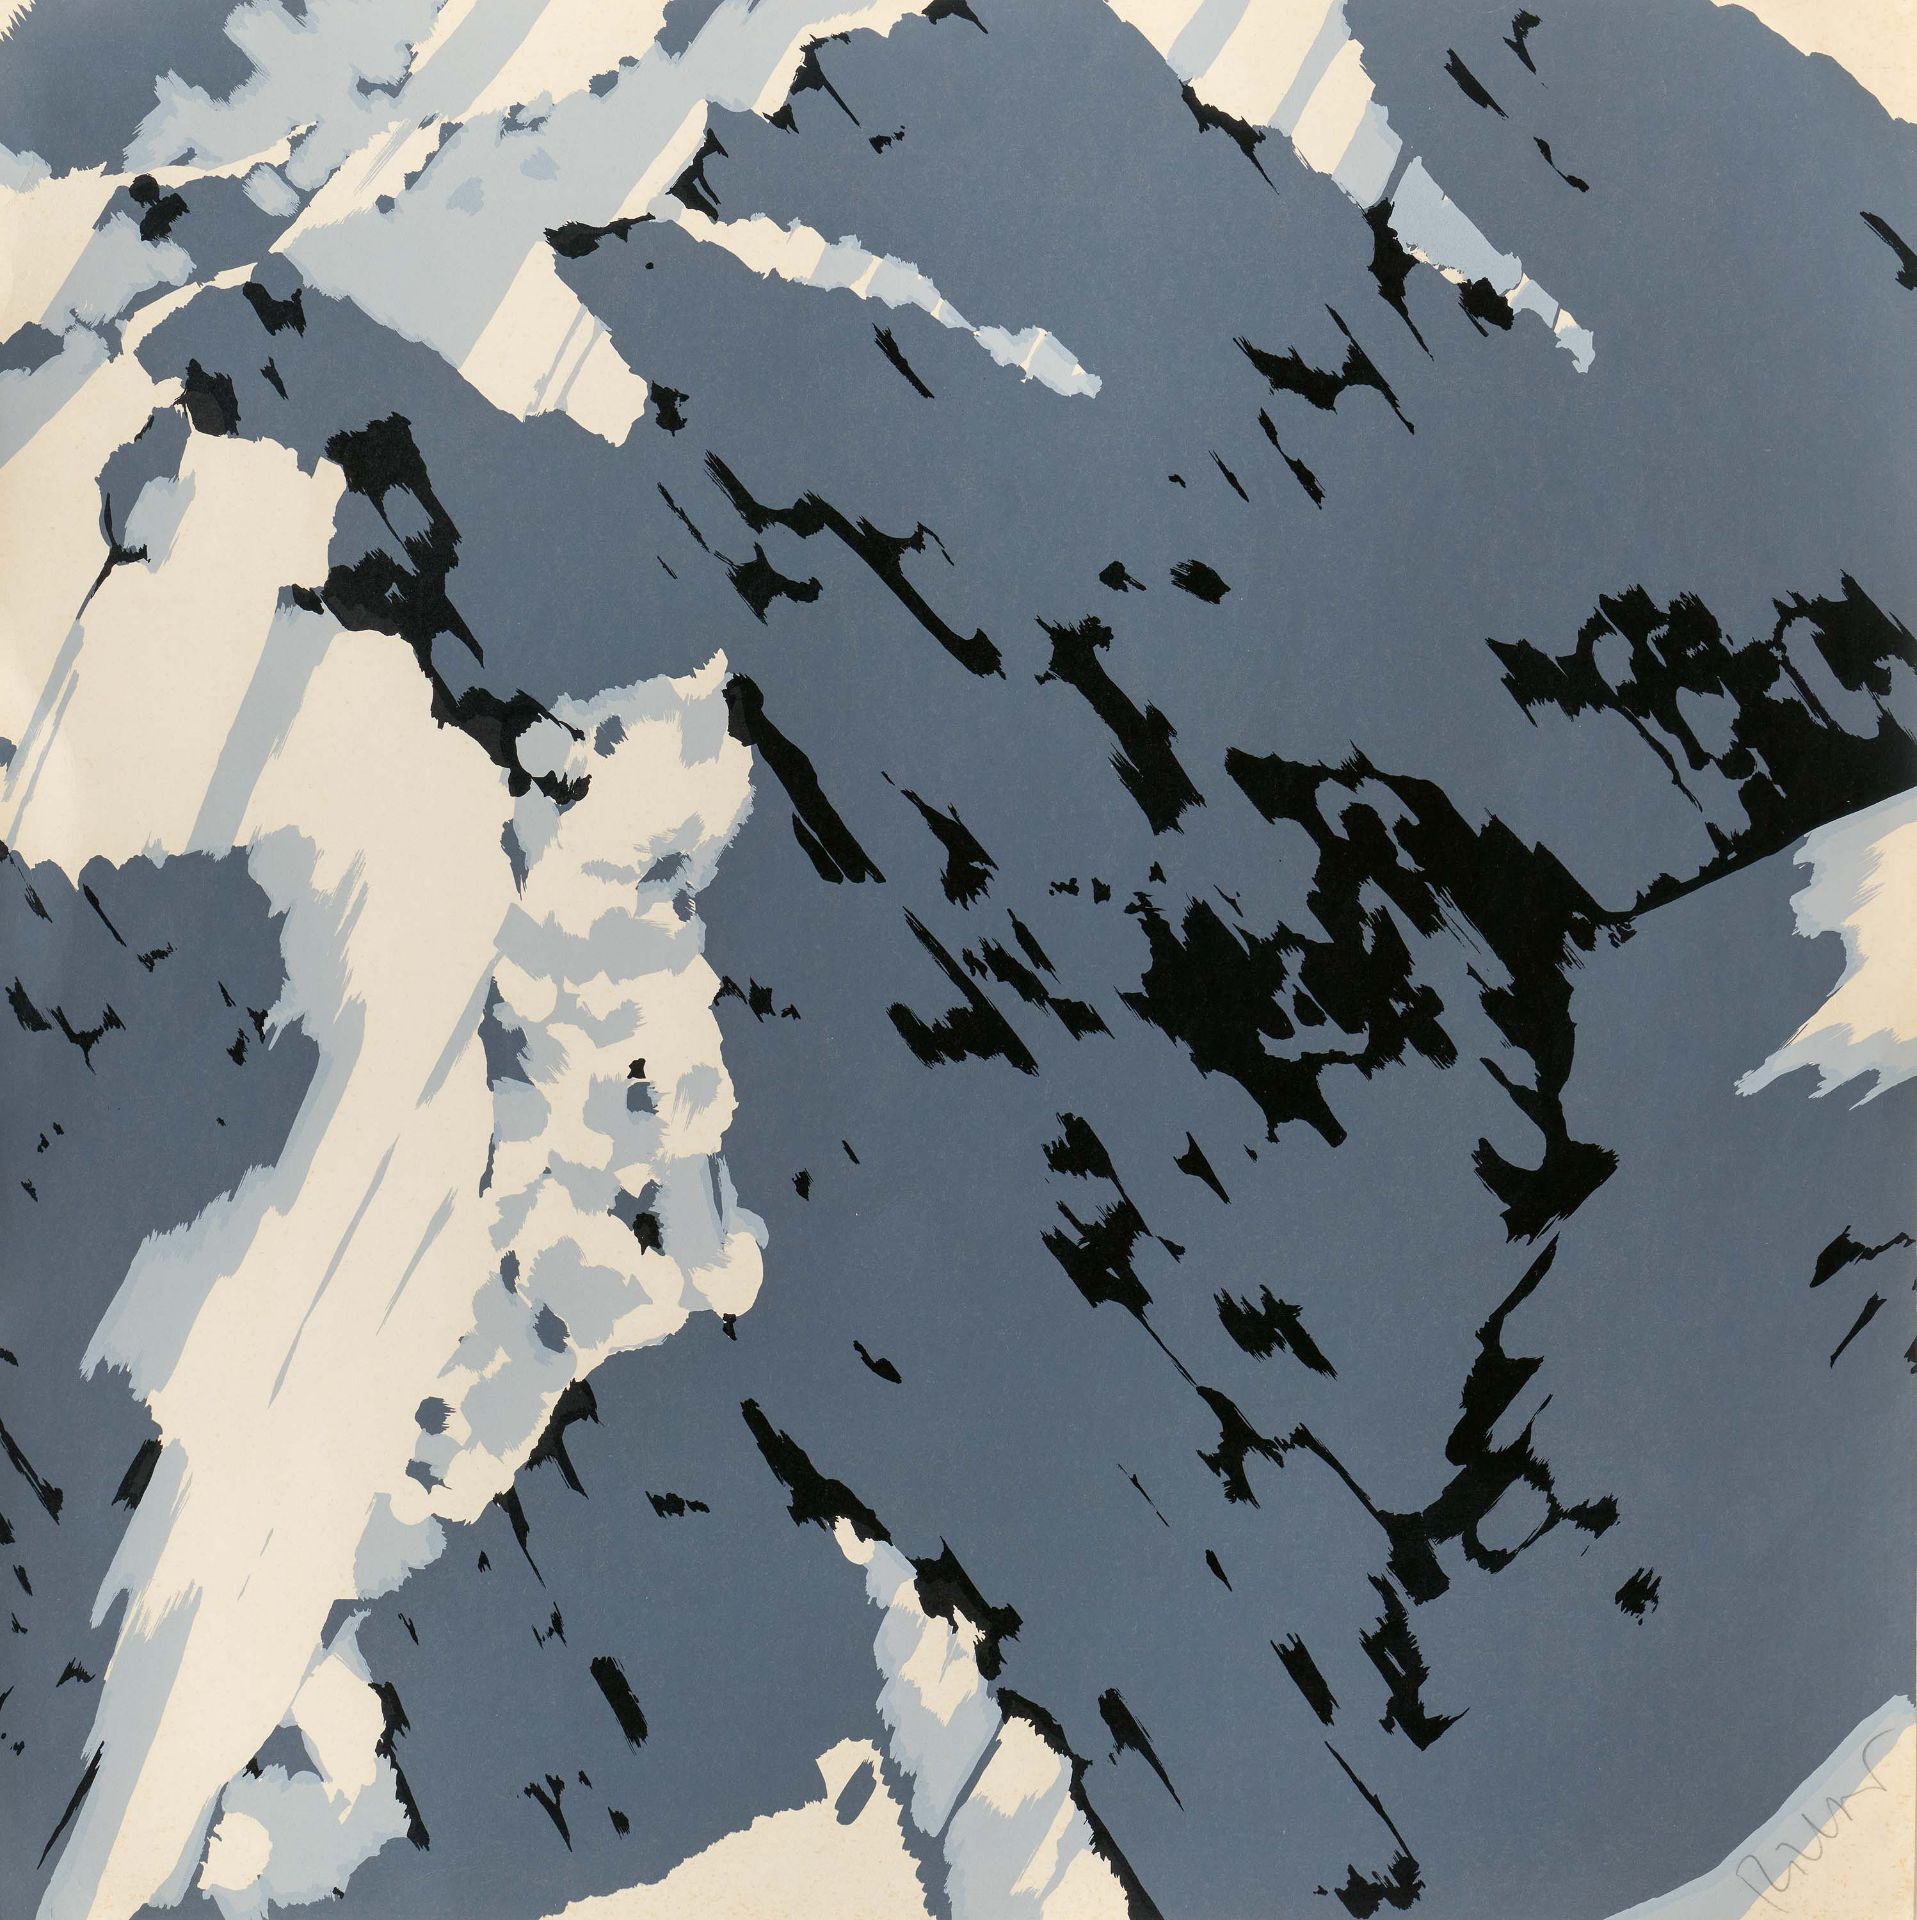 Gerhard Richter: Schweizer Alpen I (A1)